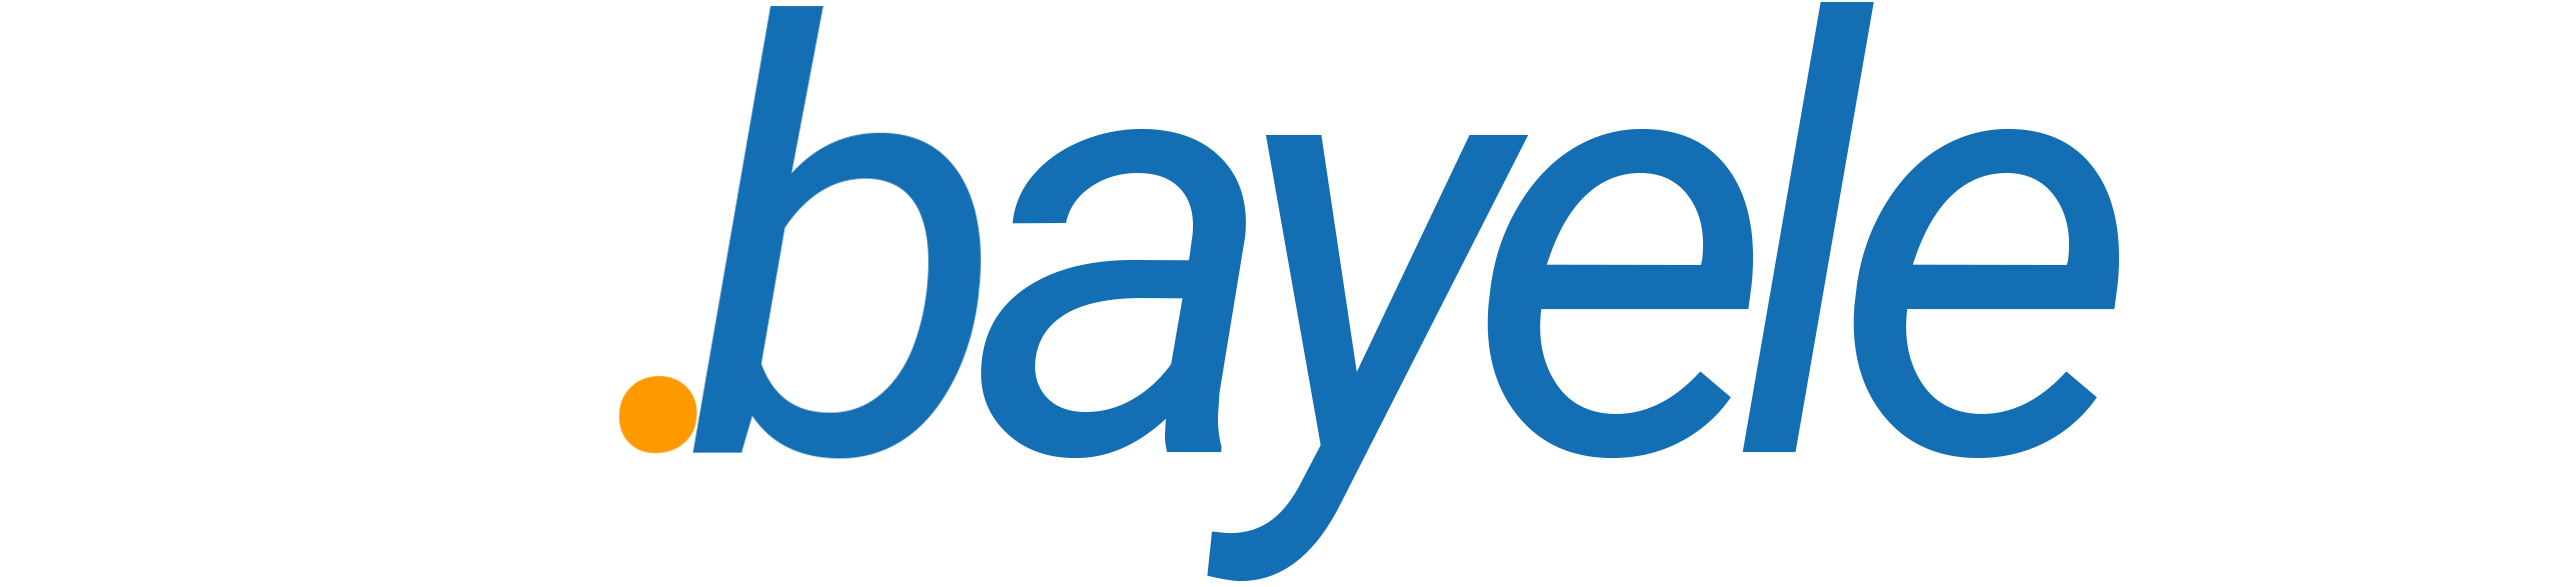 Bayele Logo